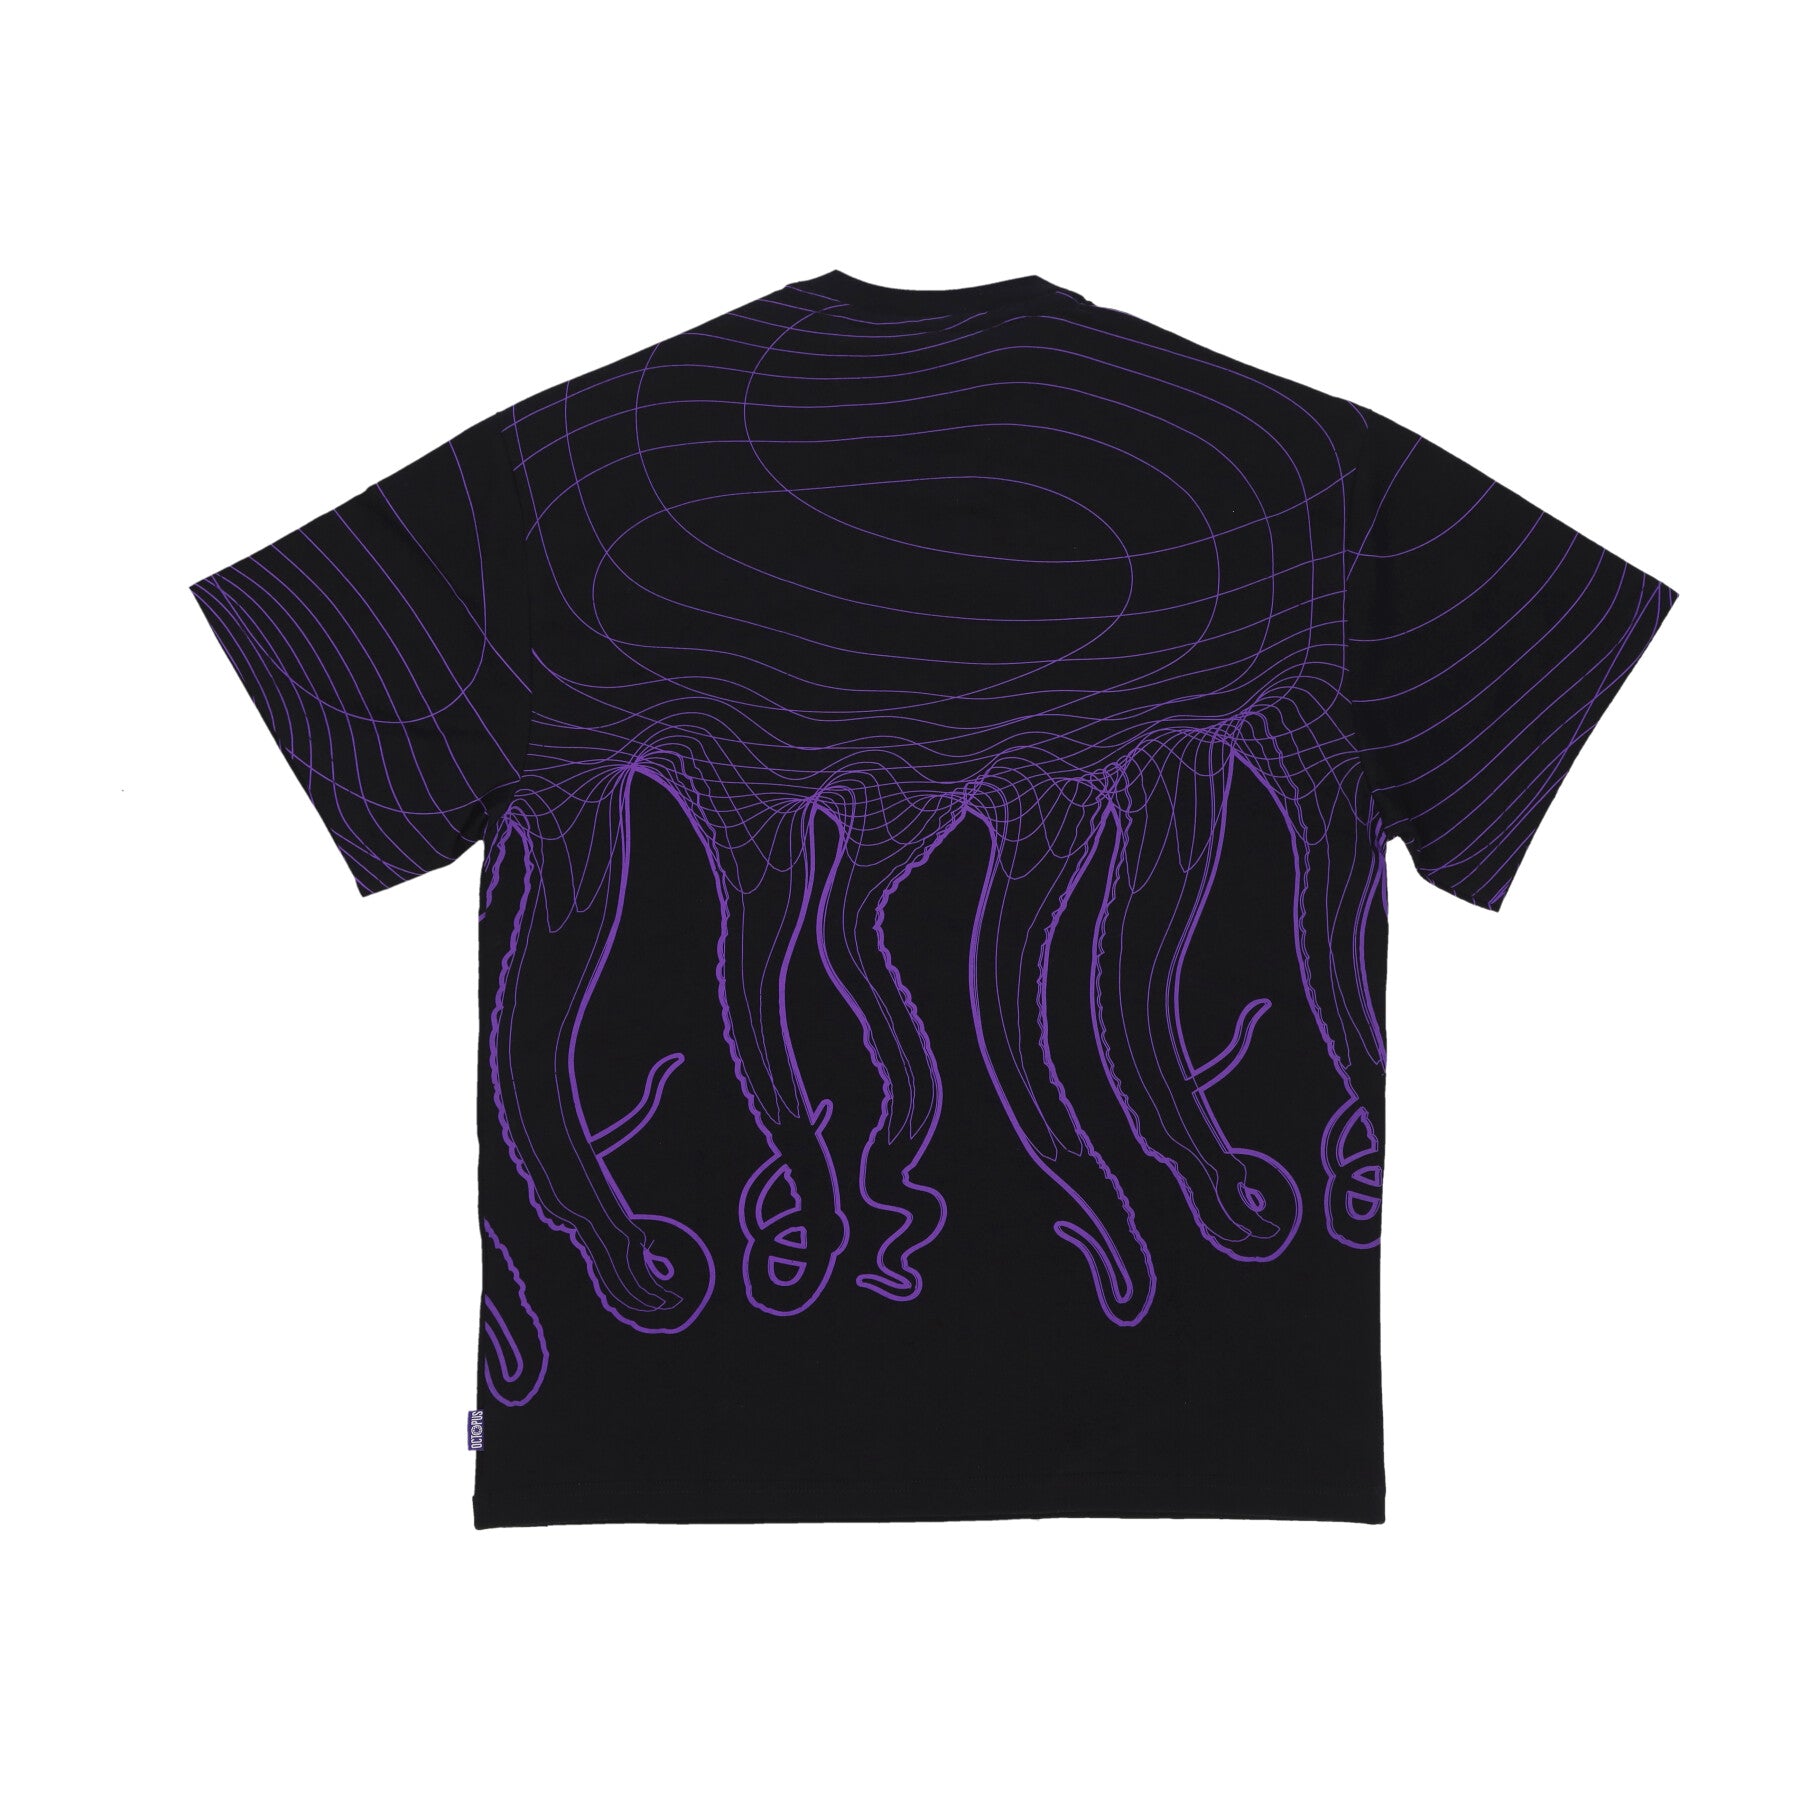 Evangelion 01 Flowing Octopus Tee Black Men's T-Shirt